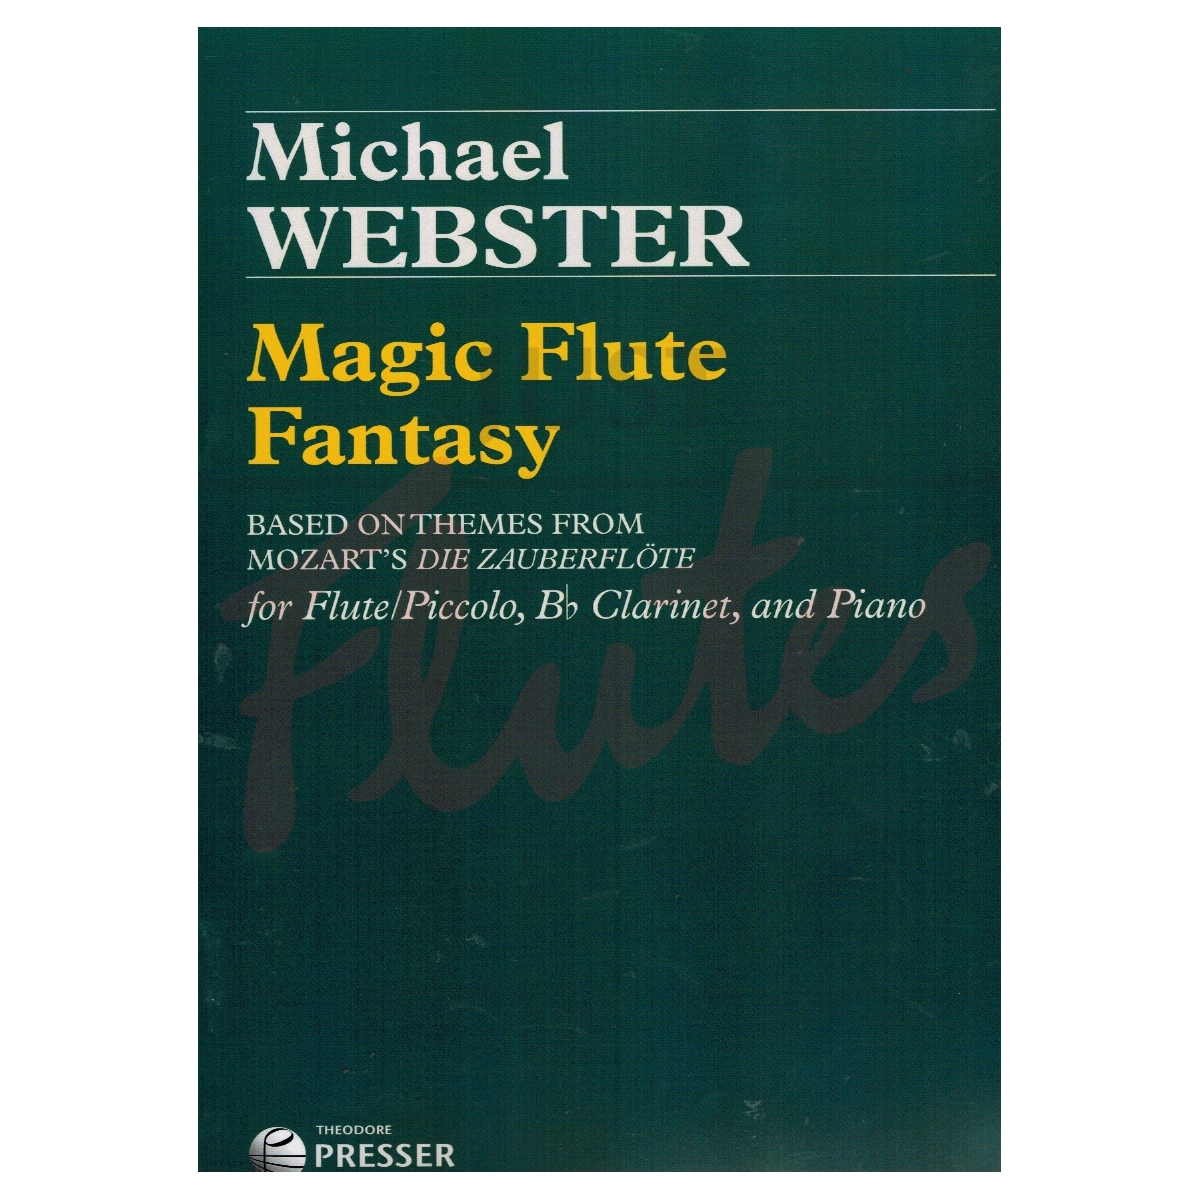 Magic Flute Fantasy